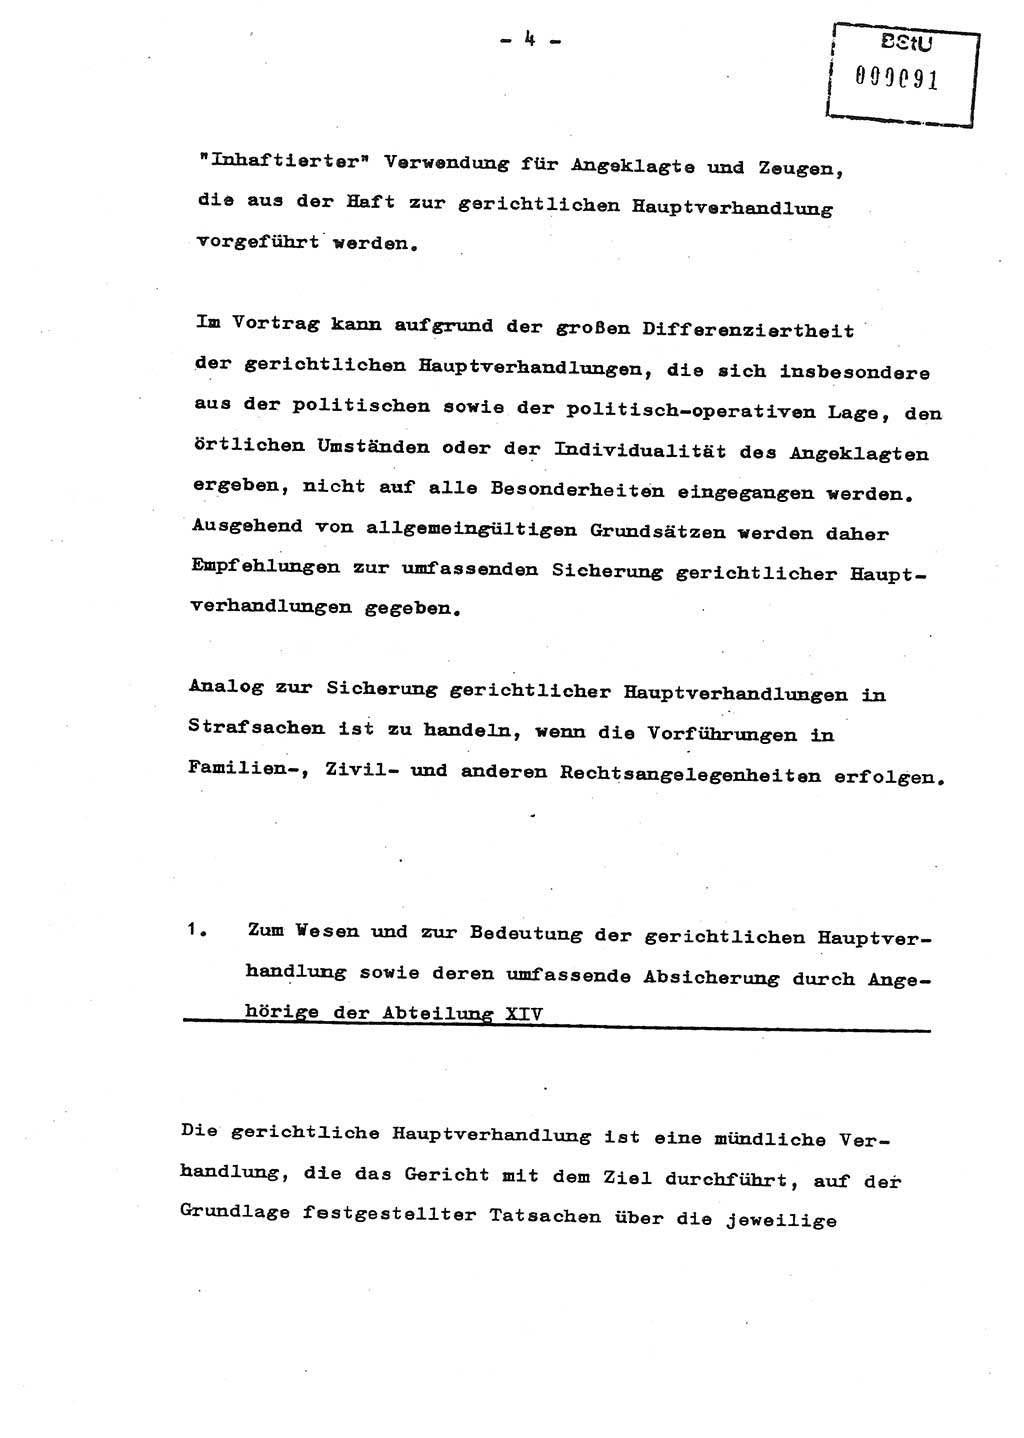 Schulungsmaterial Exemplar-Nr.: 8, Ministerium für Staatssicherheit [Deutsche Demokratische Republik (DDR)], Abteilung (Abt.) ⅩⅣ, Berlin 1987, Seite 4 (Sch.-Mat. Expl. 8 MfS DDR Abt. ⅩⅣ /87 1987, S. 4)